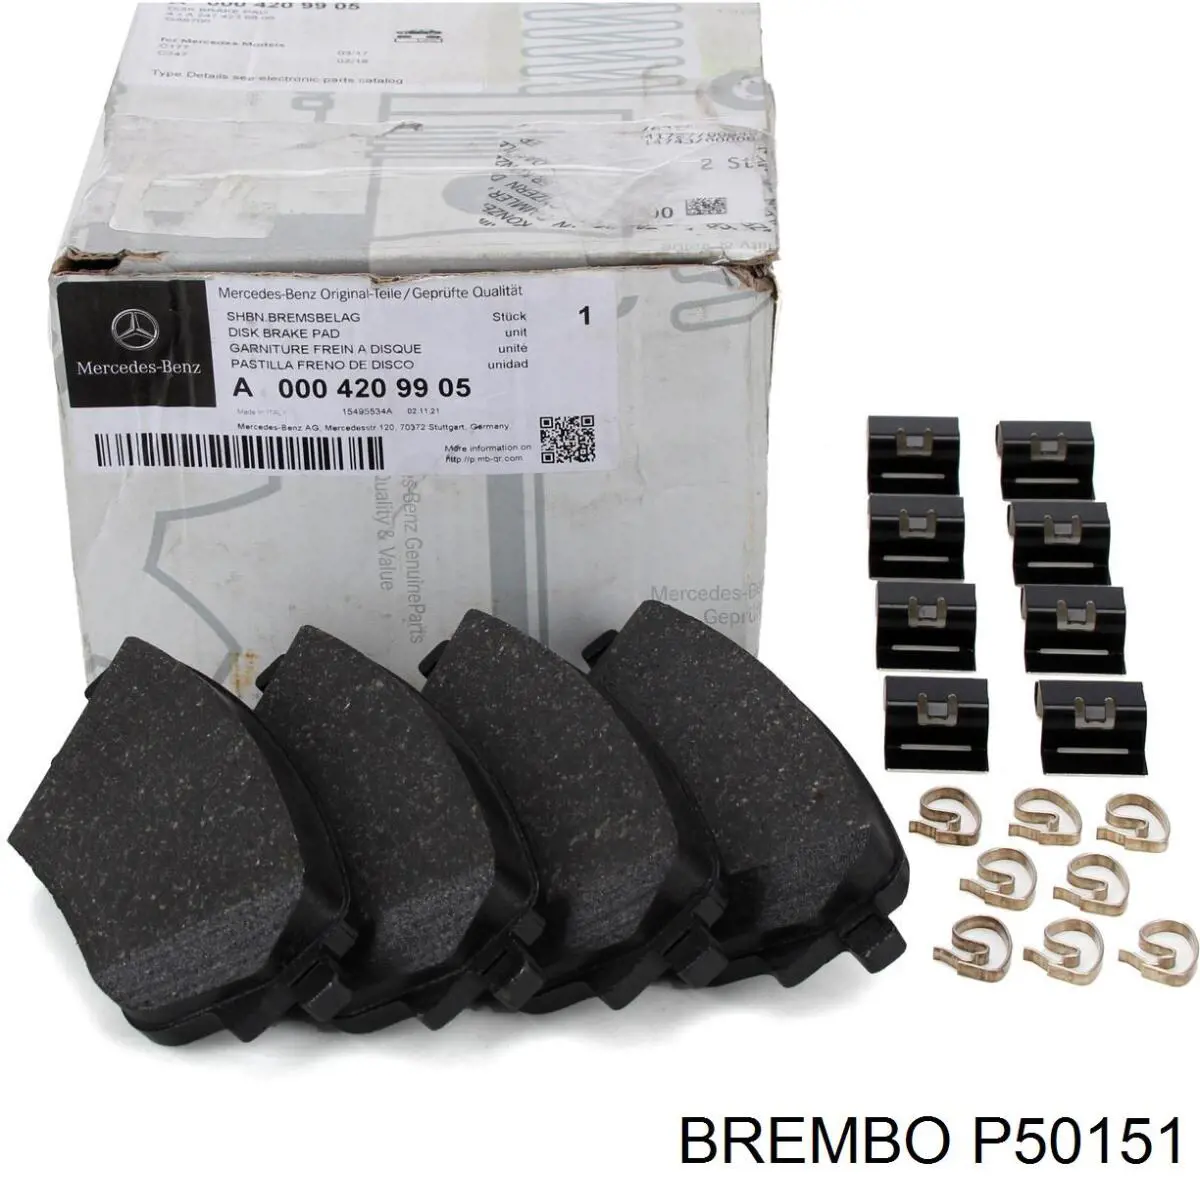 P50151 Brembo колодки тормозные задние дисковые